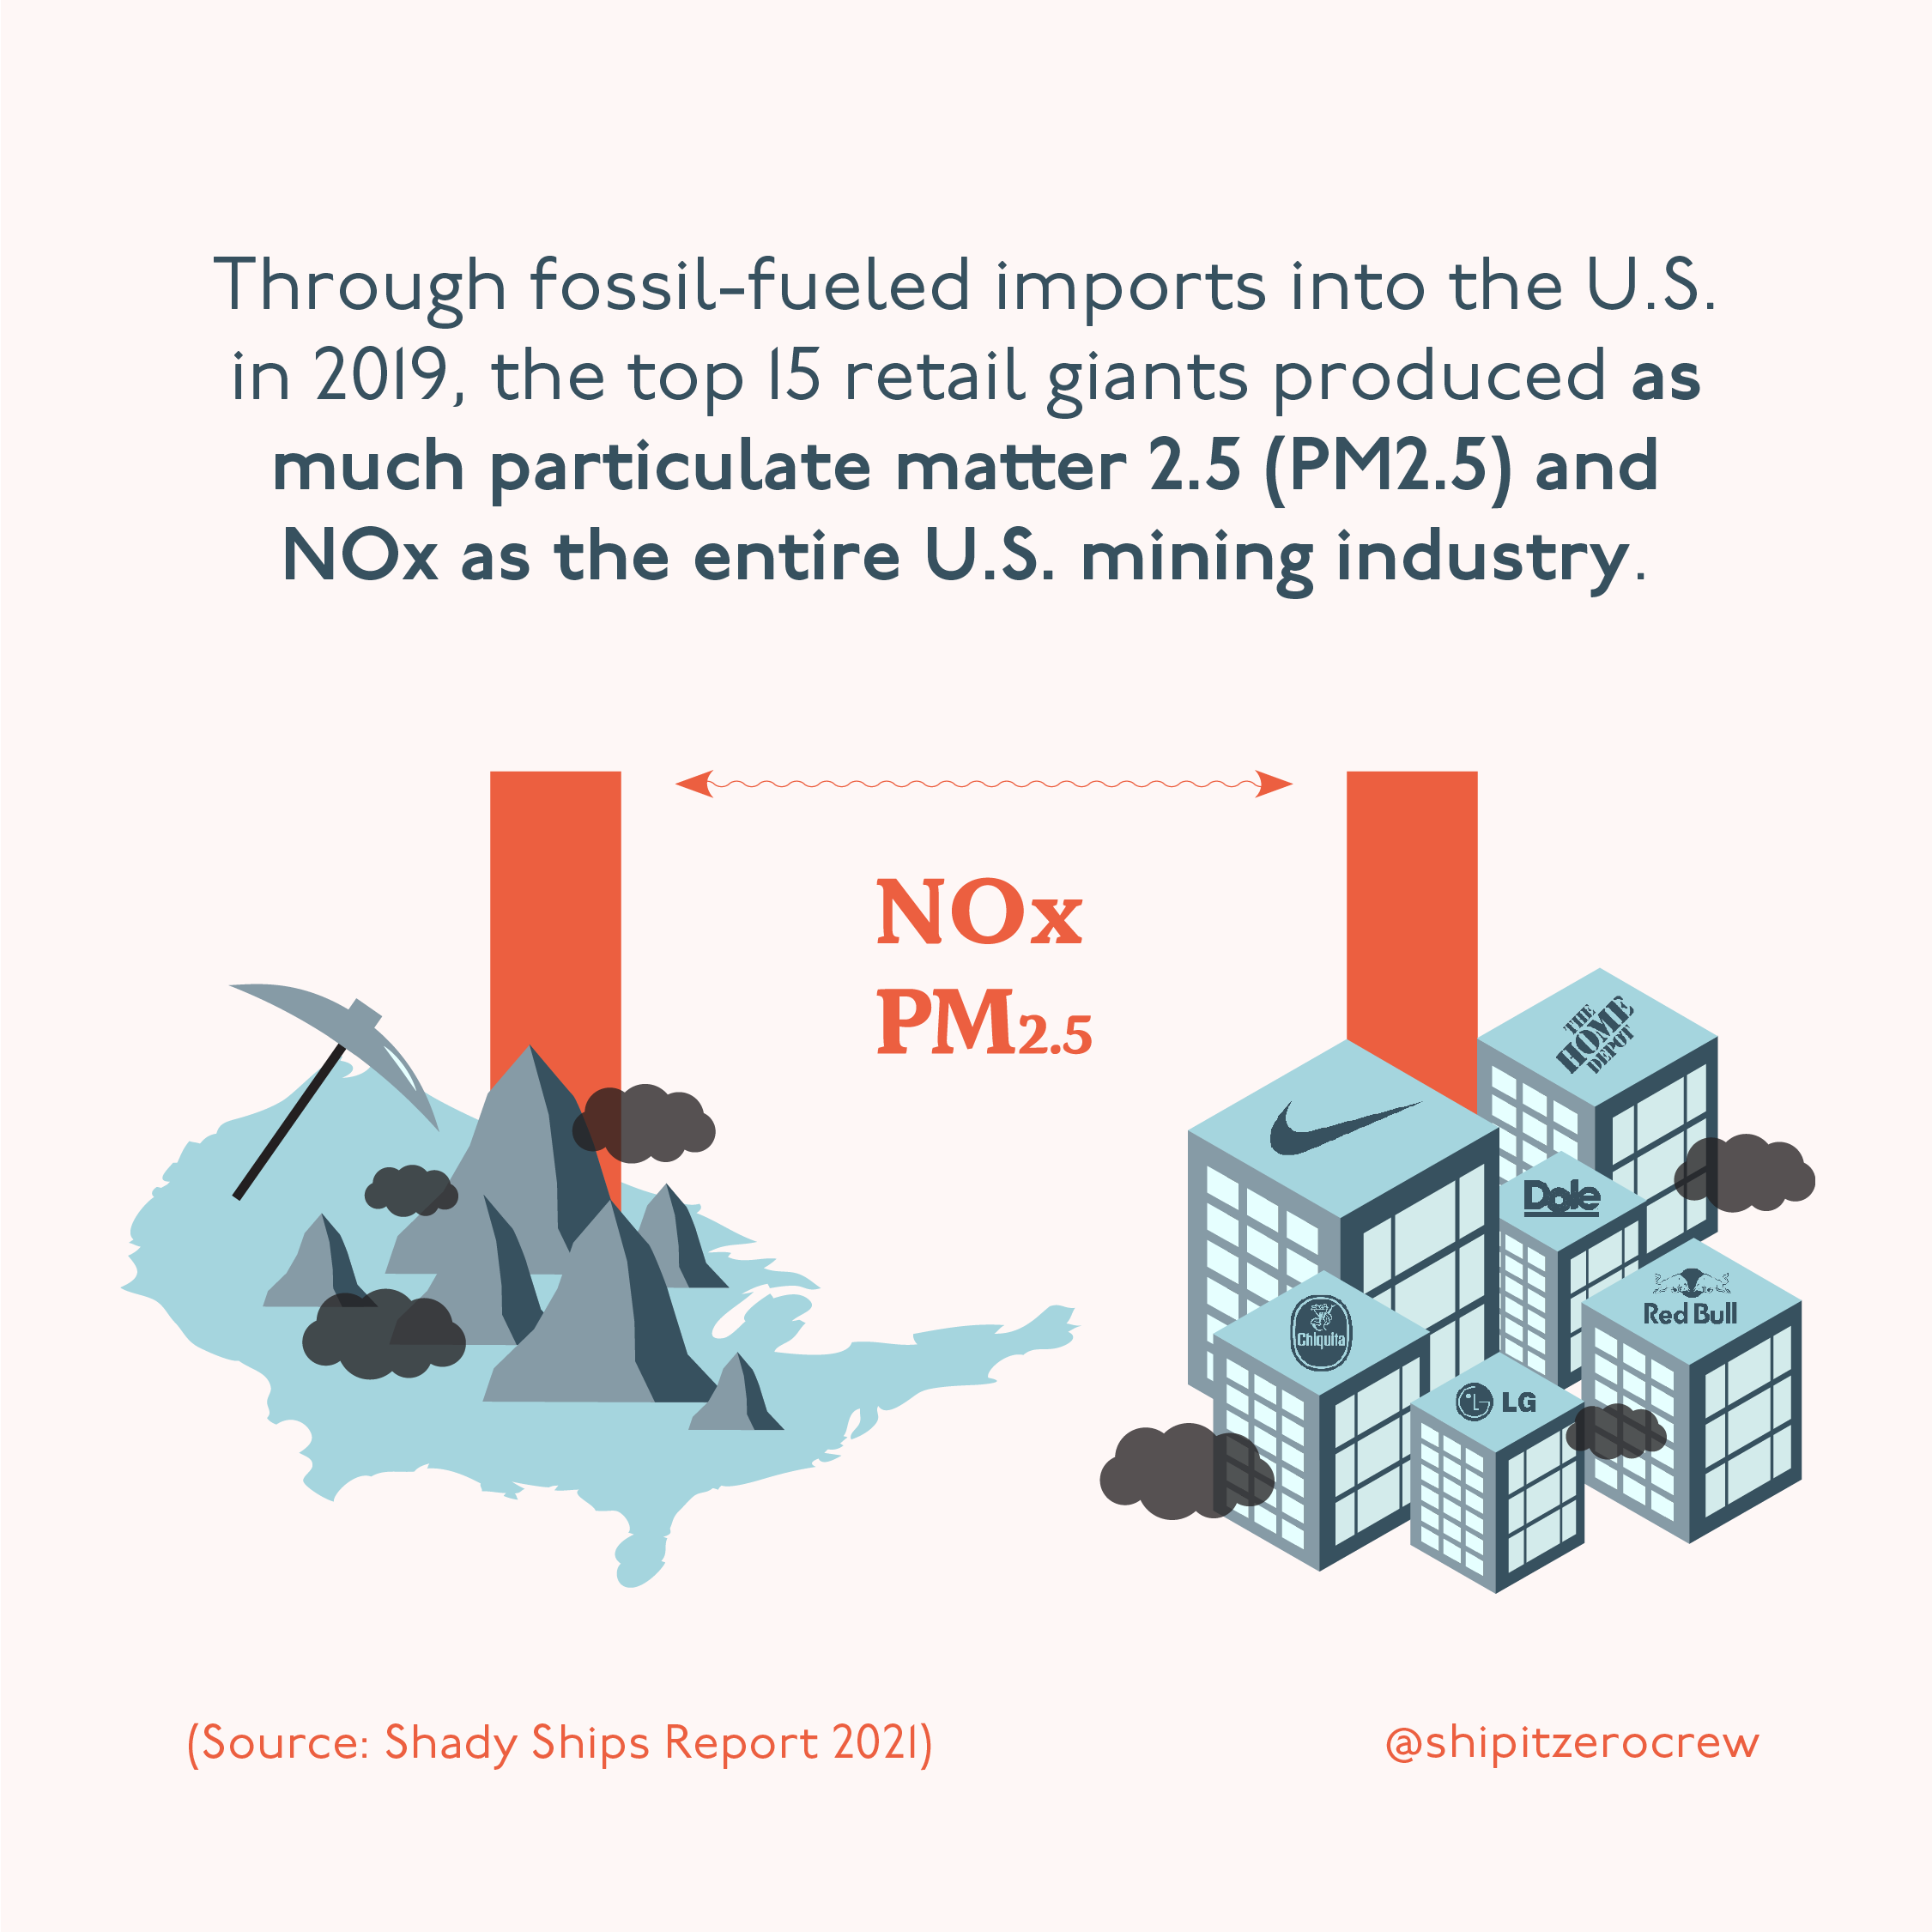 图形显示零售巨头产生的颗粒物和氮氧化物与整个美国采矿业一样多